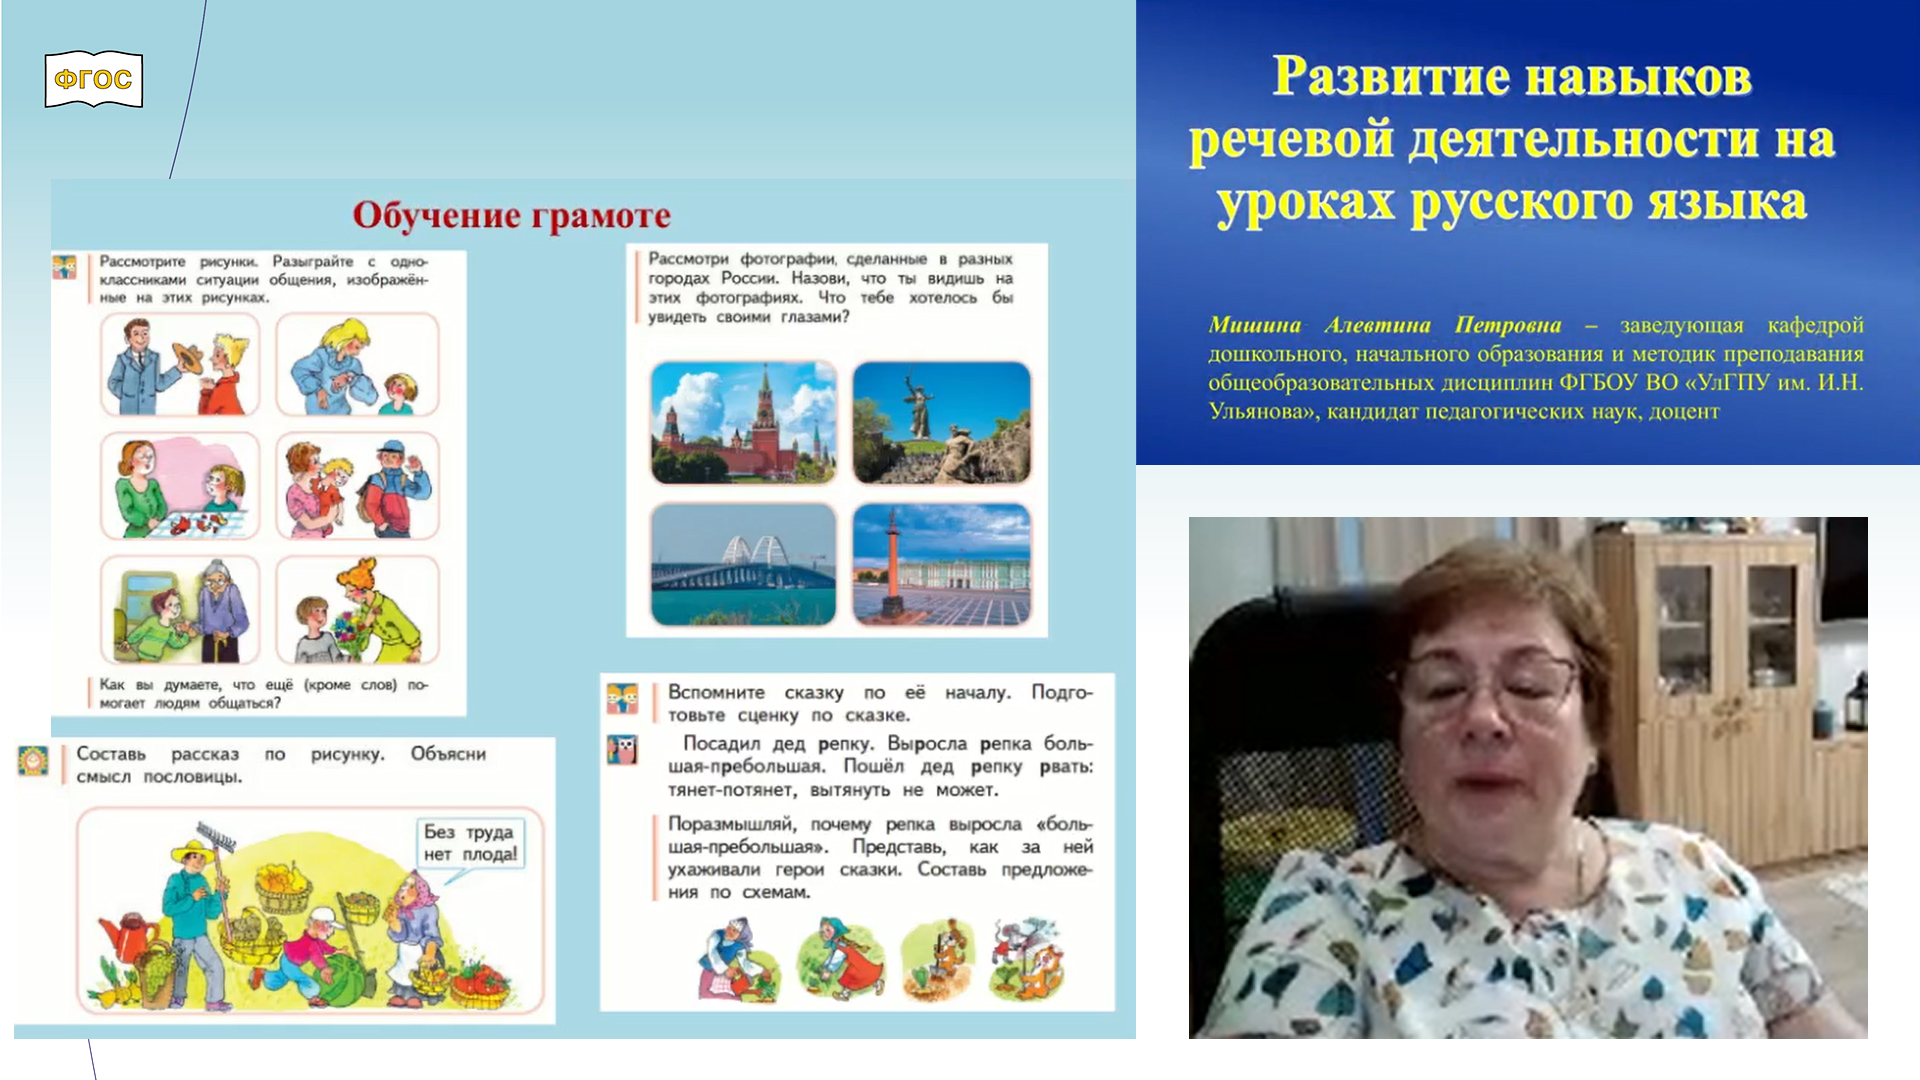 Развитие навыков речевой деятельности на уроках русского языка